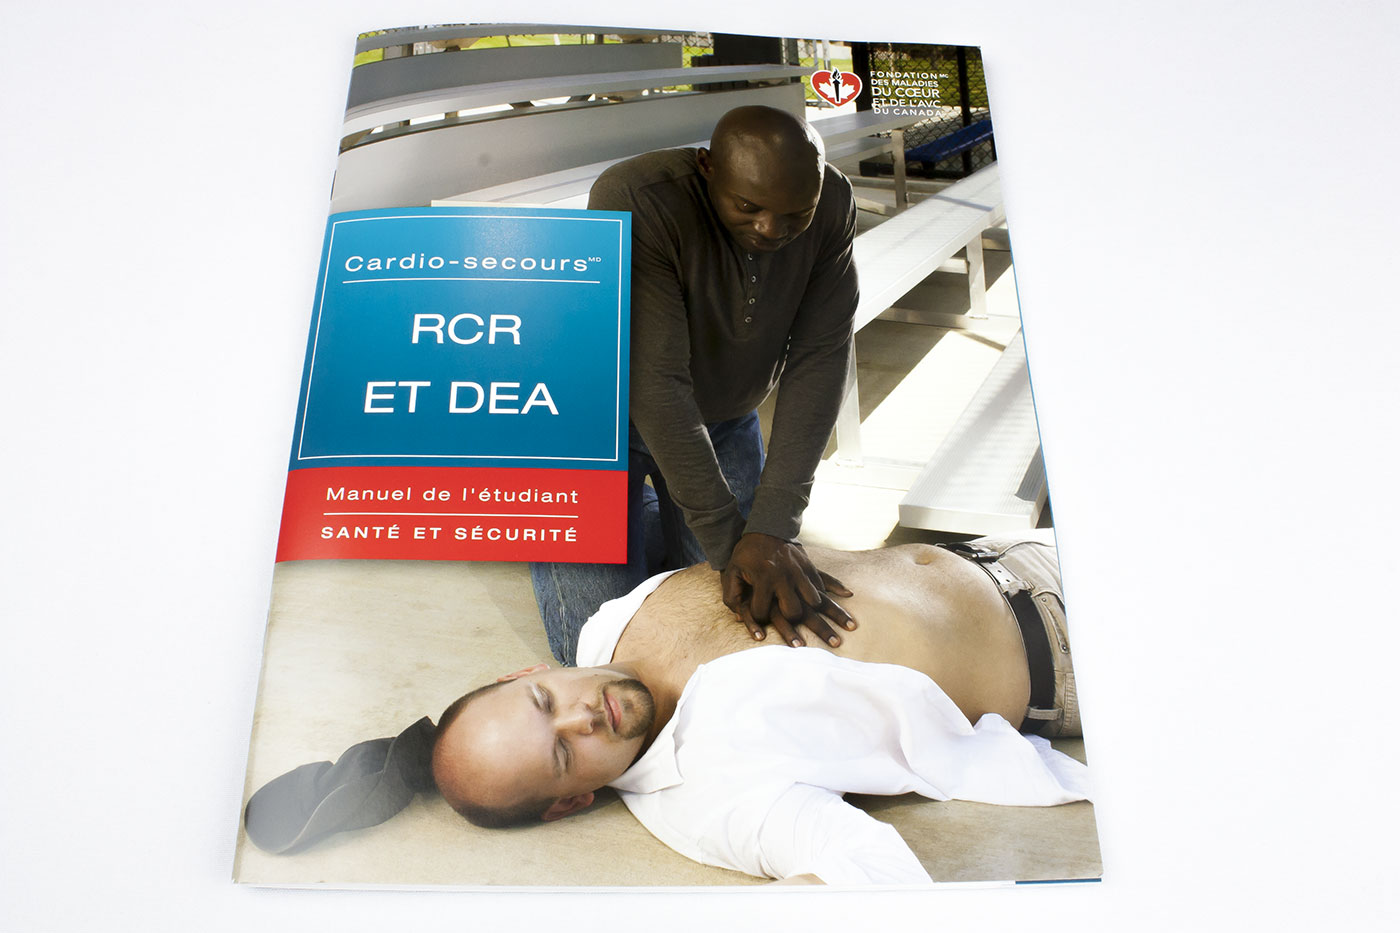 Manuel de l'étudiant - Cardio secours (RCR et DEA)